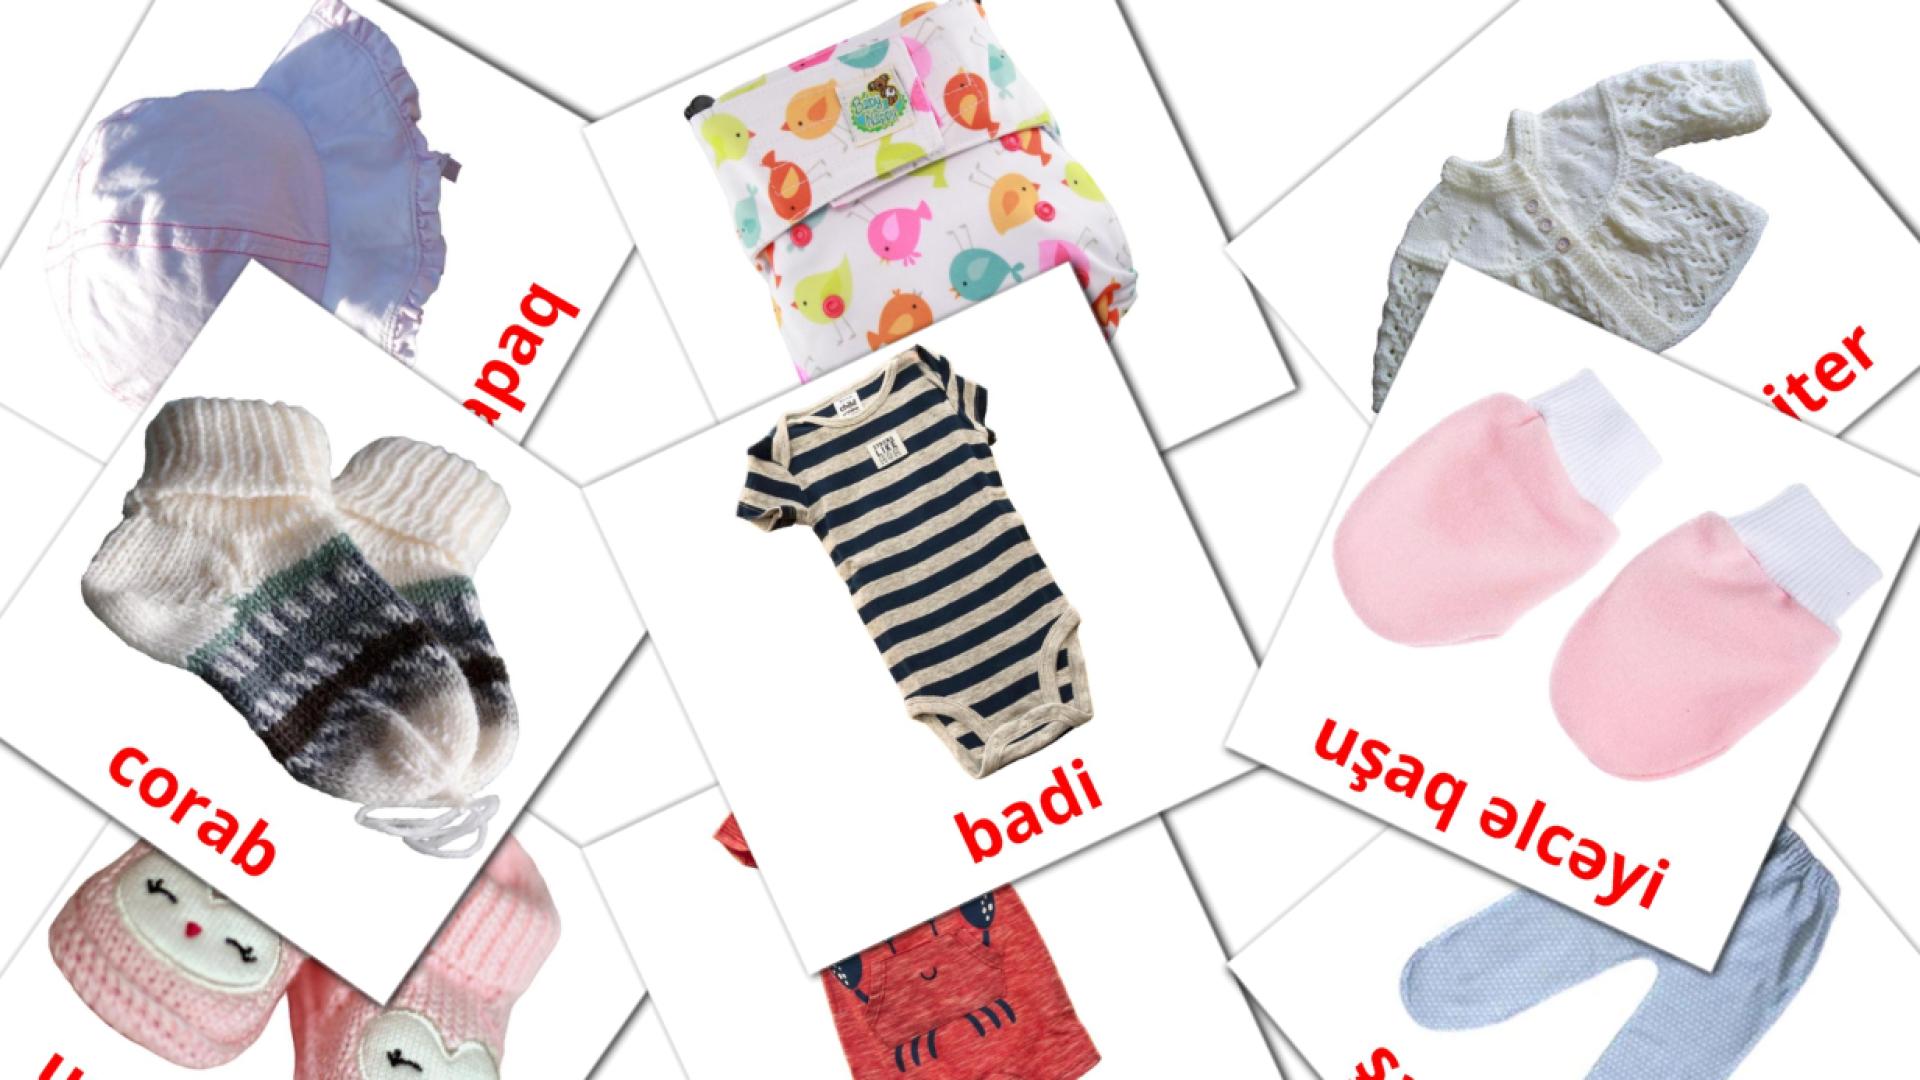 Baby clothes - azerbaijani vocabulary cards